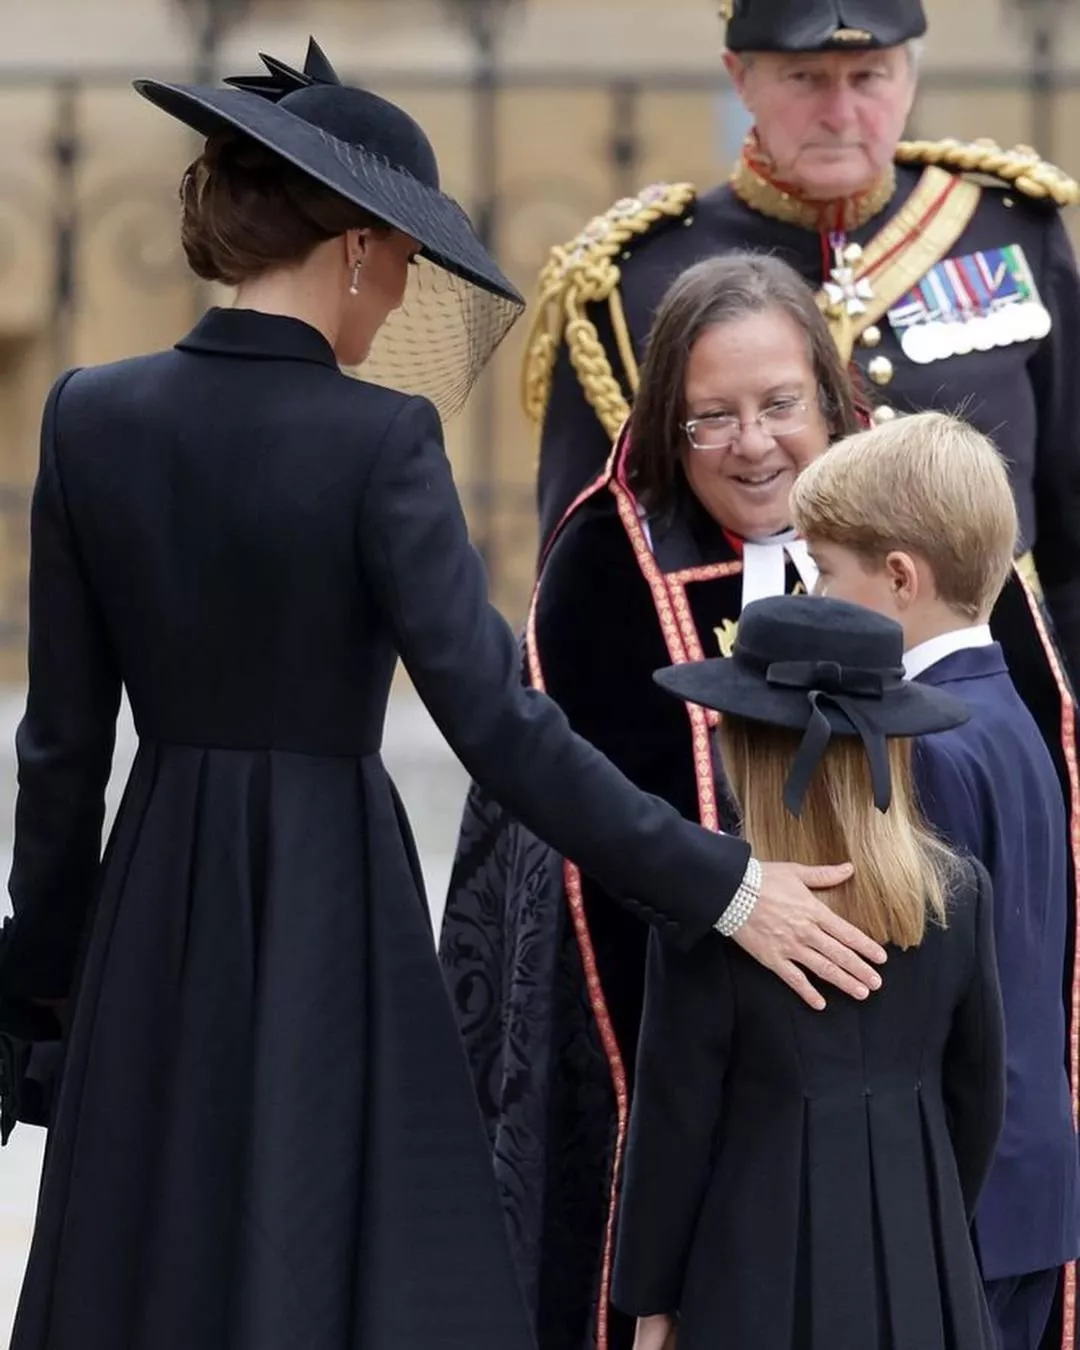 لوك كيت ميدلتون في مراسم جنازة الملكة اليزابيث: مجوهراتها حملت رسالة للملكة الراحلة